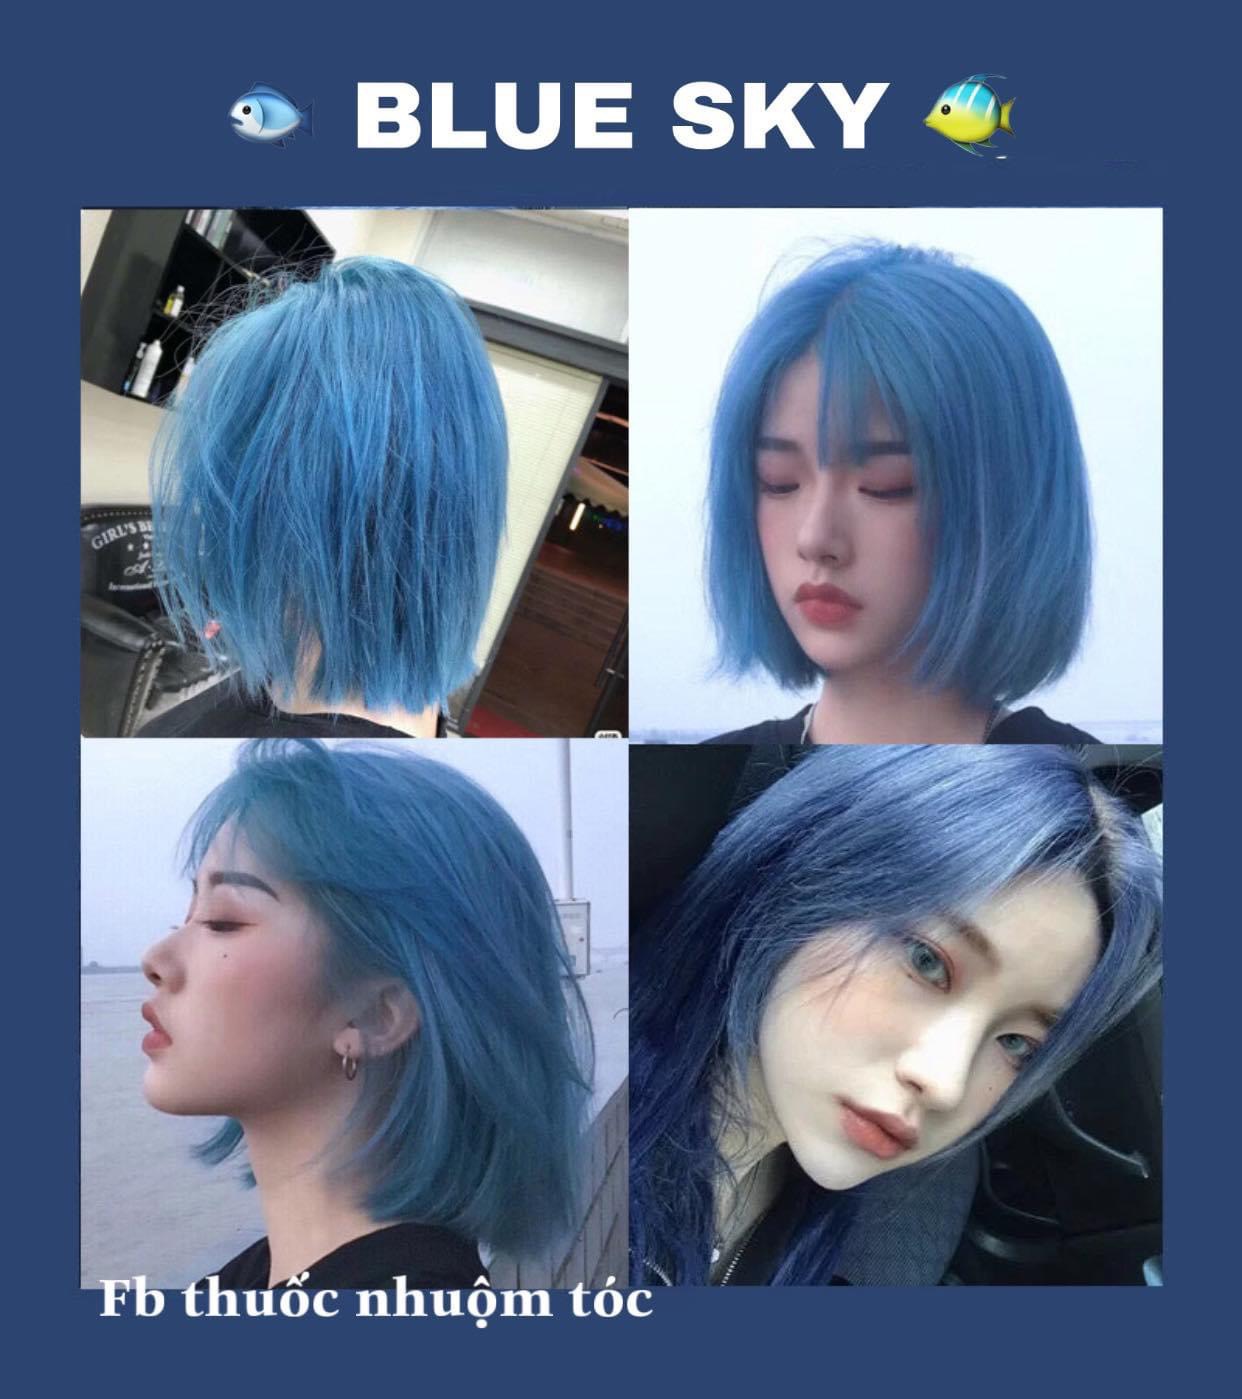 Nhuộm tóc màu xanh blue sky, bạn sẽ có cảm giác như đang bay trên bầu trời xanh thẳm với mái tóc bồng bềnh và mềm mại. Màu sắc này sẽ làm cho bạn trông trẻ trung và năng động hơn. Bấm vào hình ảnh để khám phá gam màu xanh rực rỡ và thay đổi cho mái tóc của bạn.